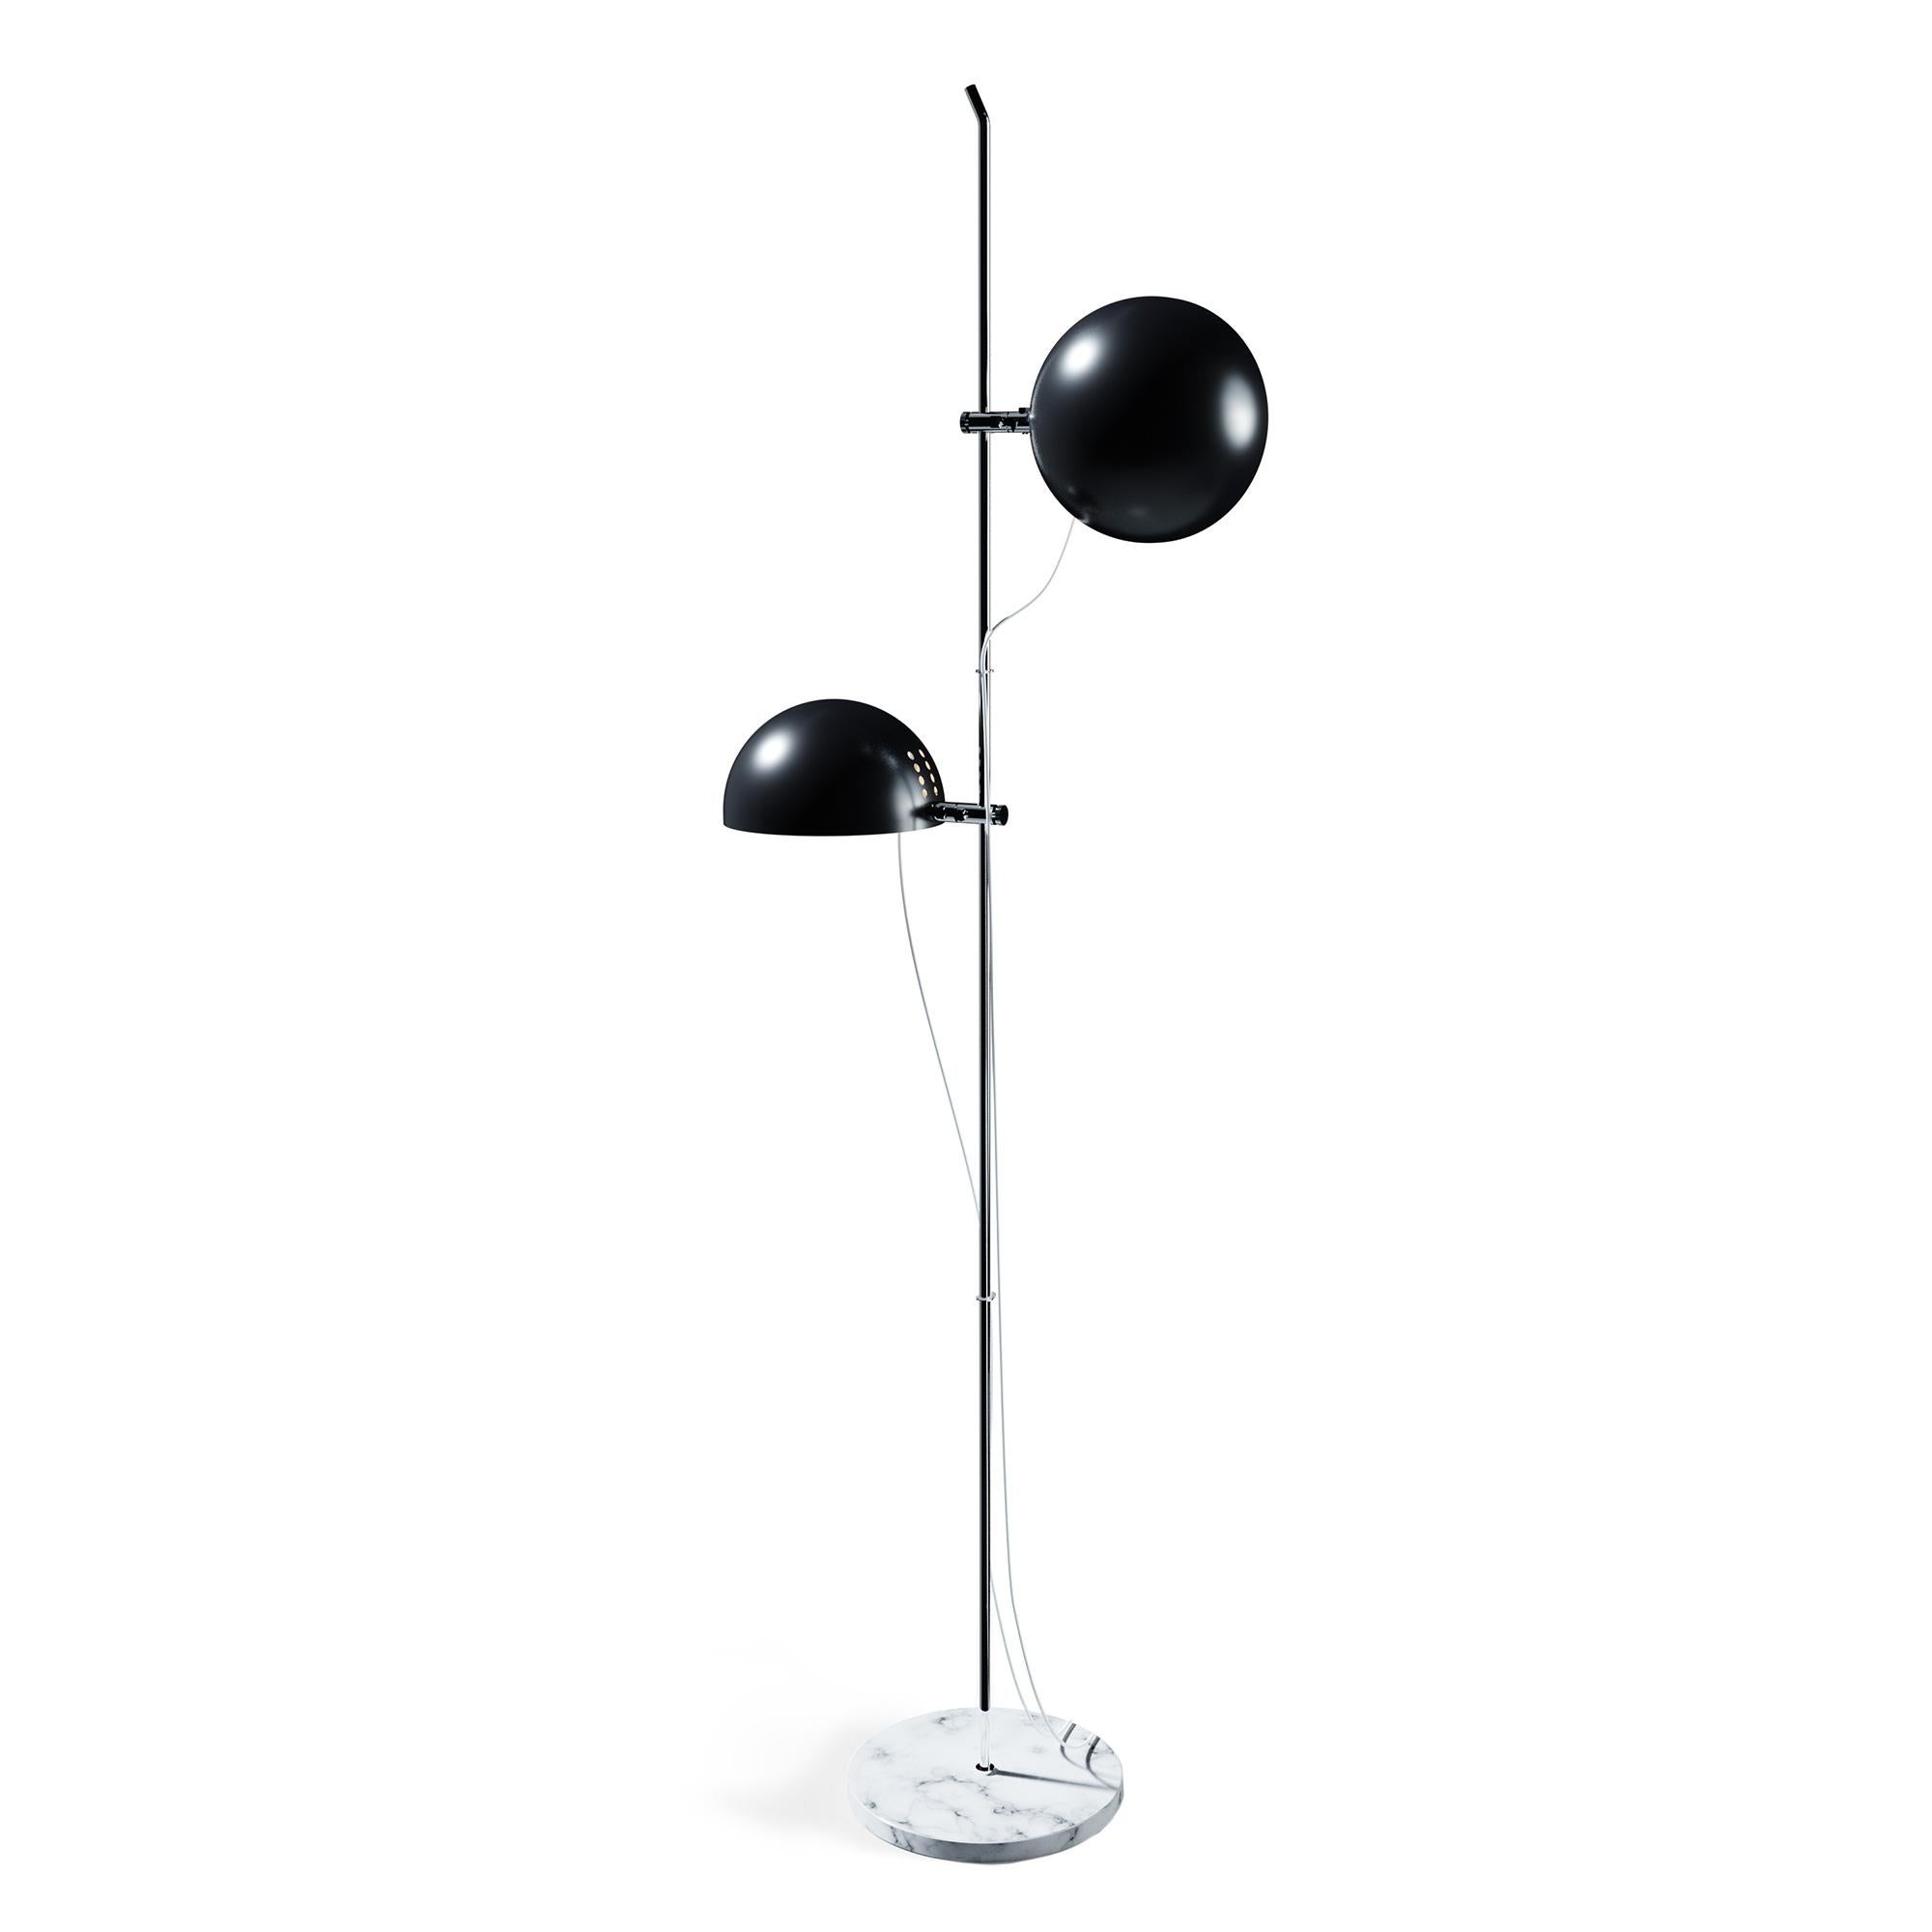 Alain Richard 'A21' Desk Lamp in Chrome for Disderot For Sale 6